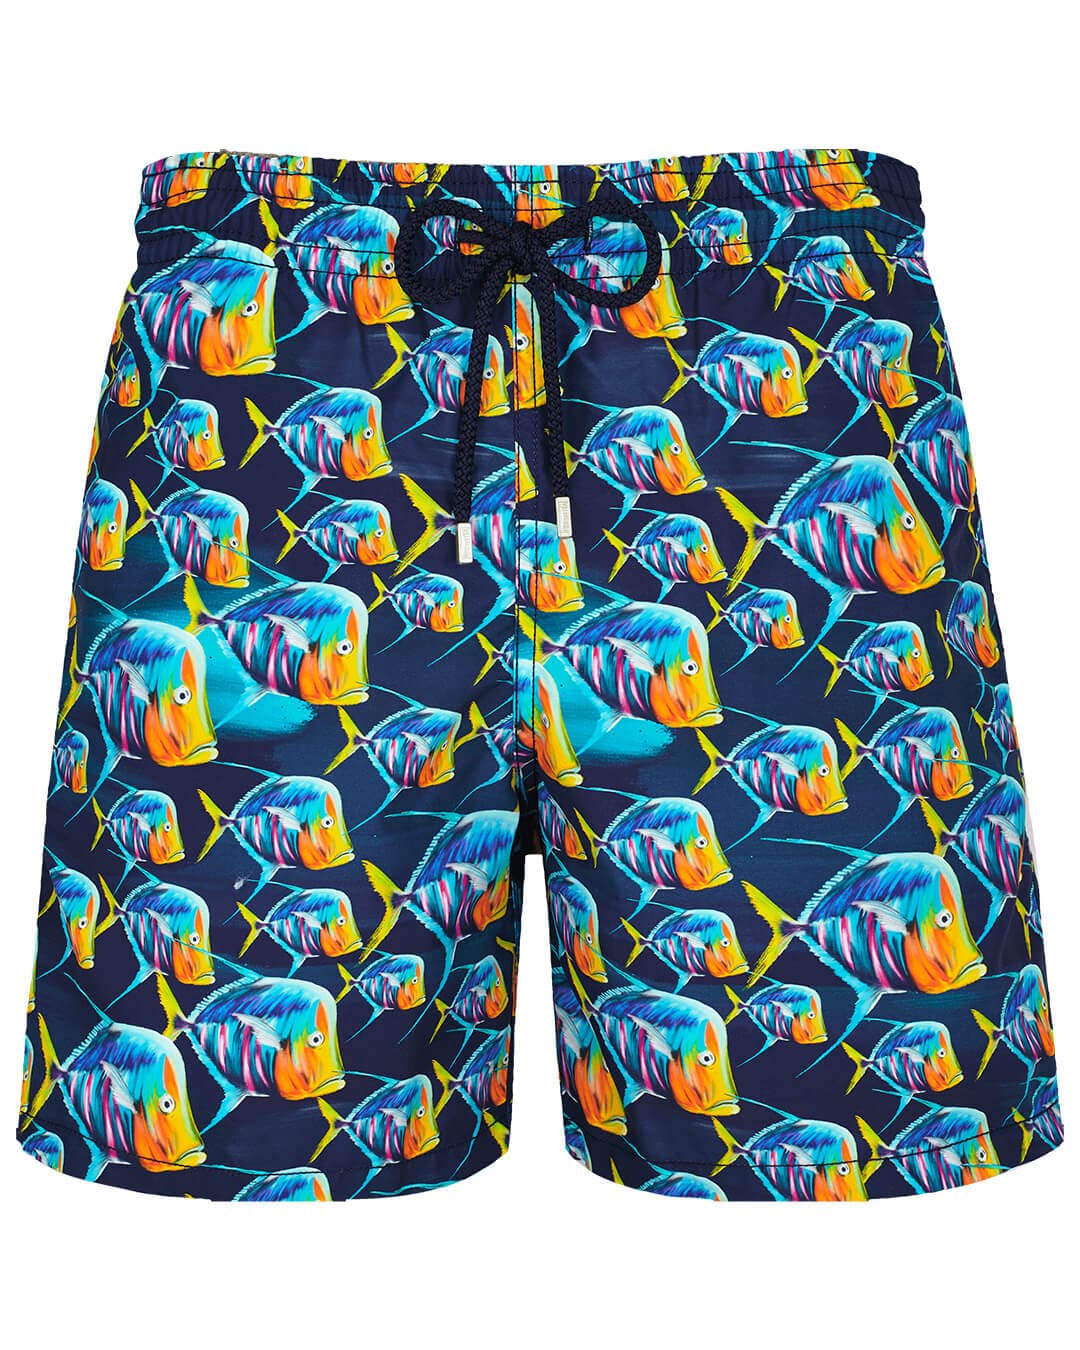 Vilebrequin Swimwear Vilebrequin Navy Piranhas Swim Shorts